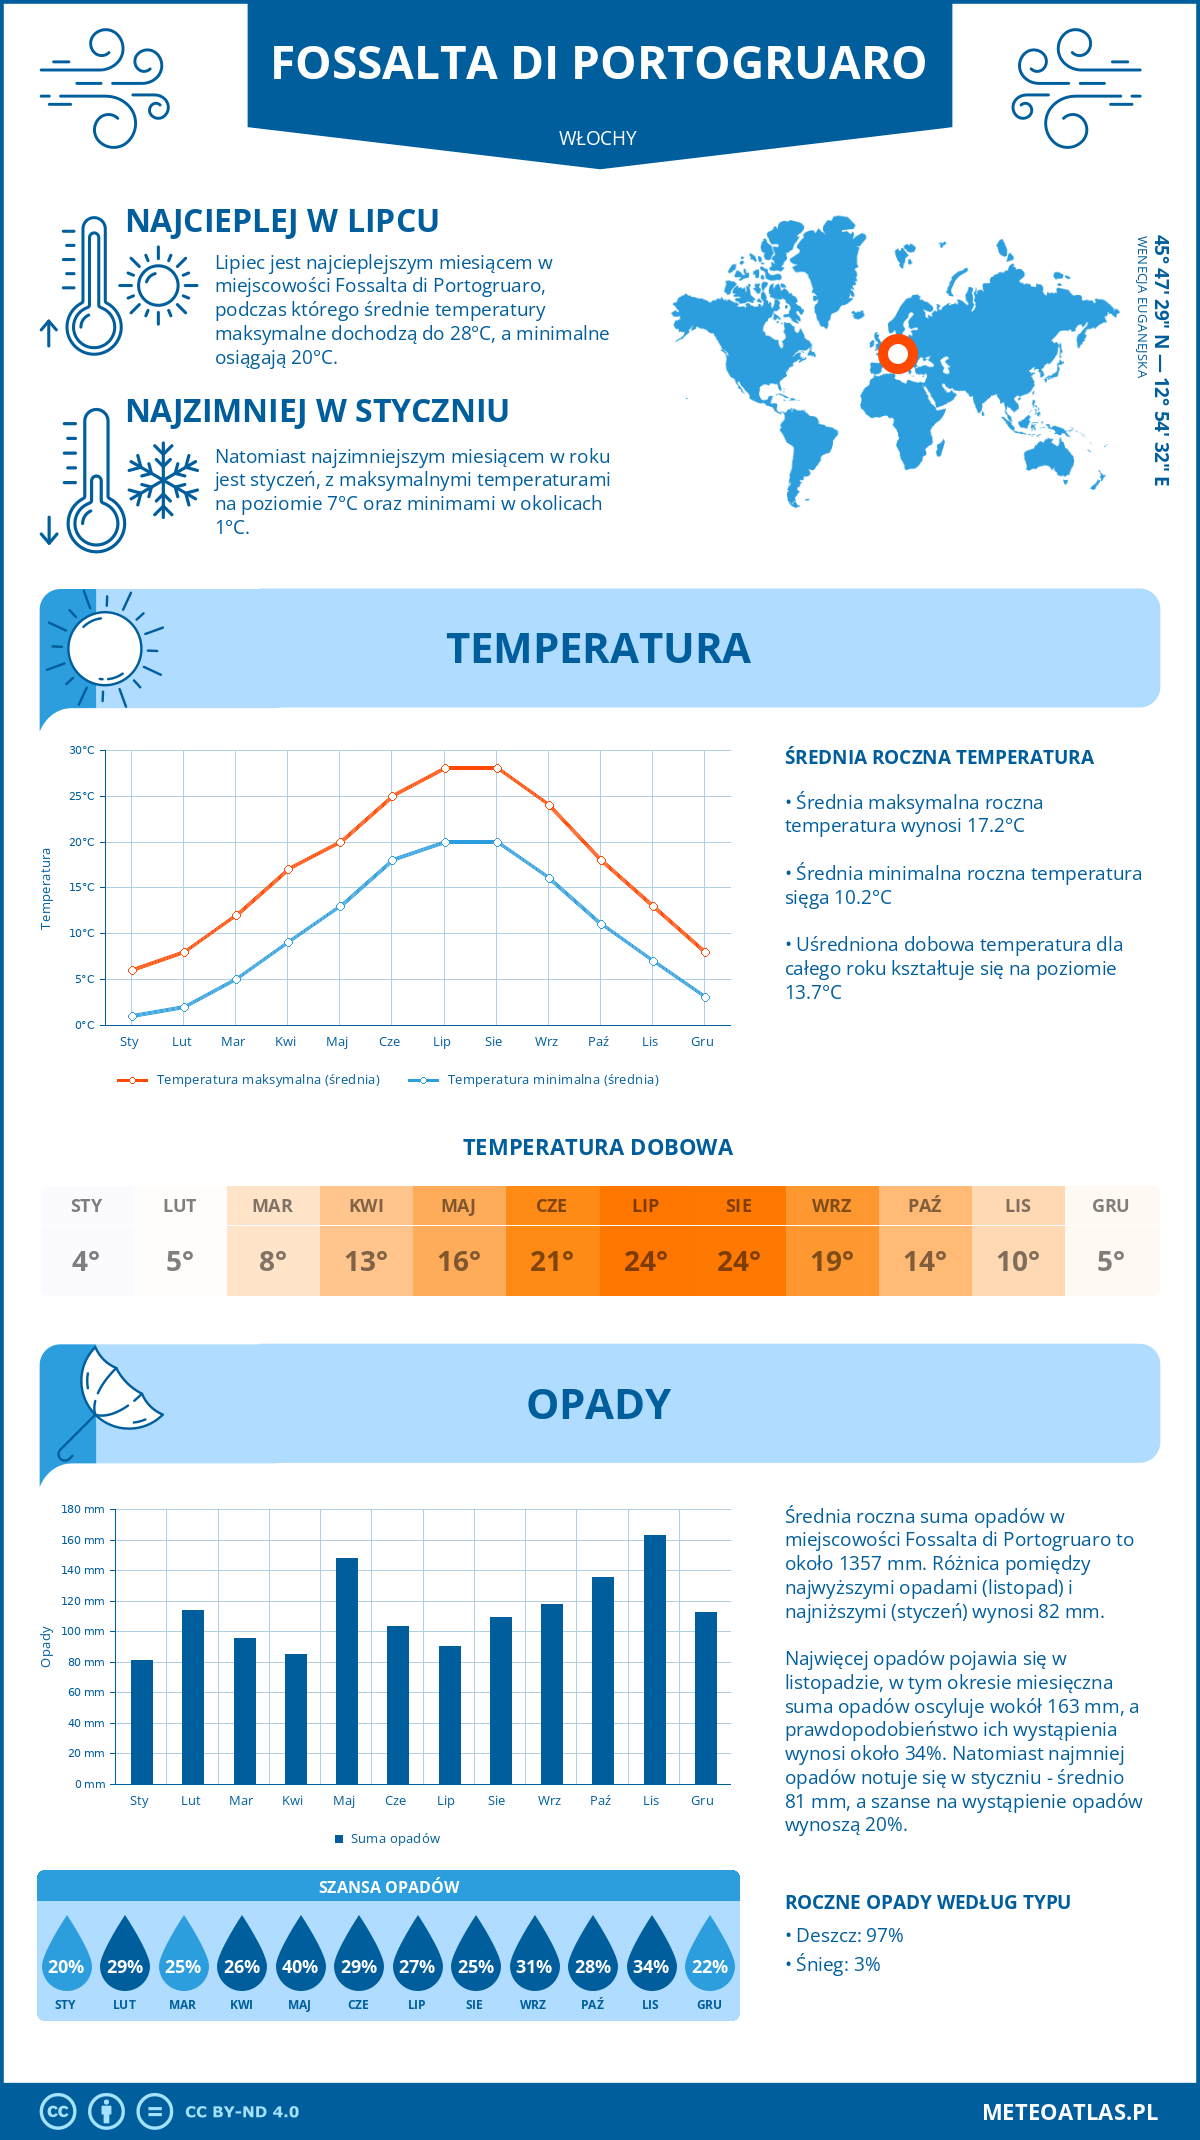 Pogoda Fossalta di Portogruaro (Włochy). Temperatura oraz opady.